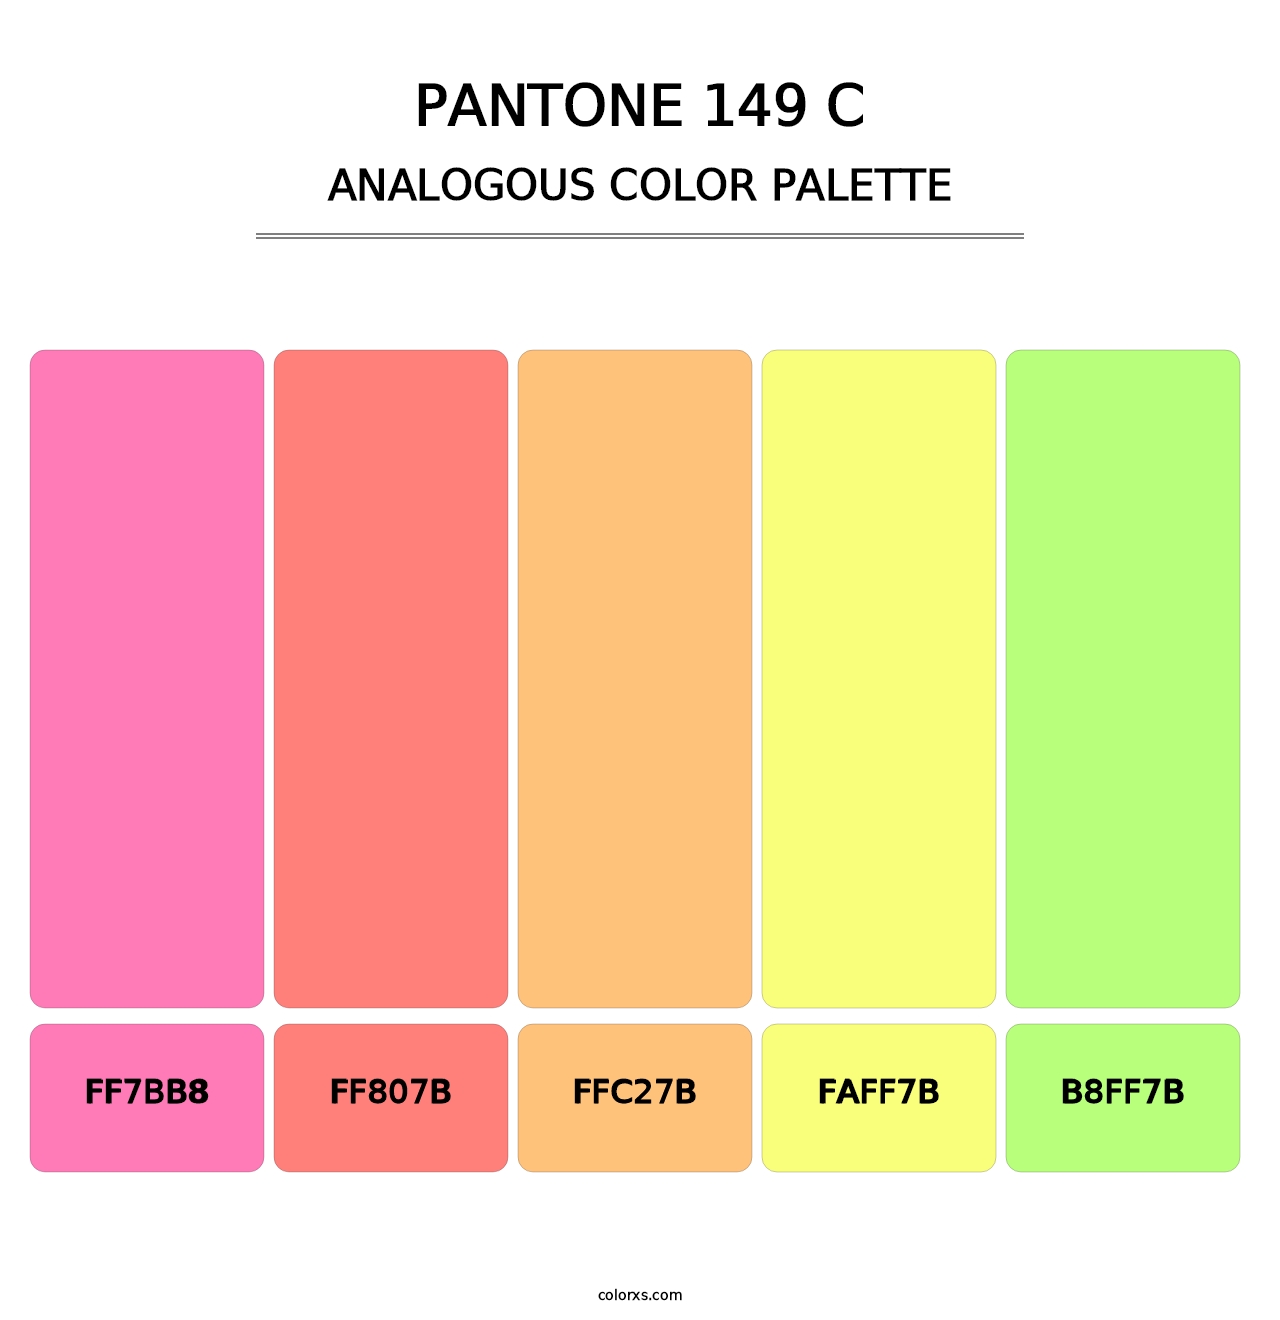 PANTONE 149 C - Analogous Color Palette